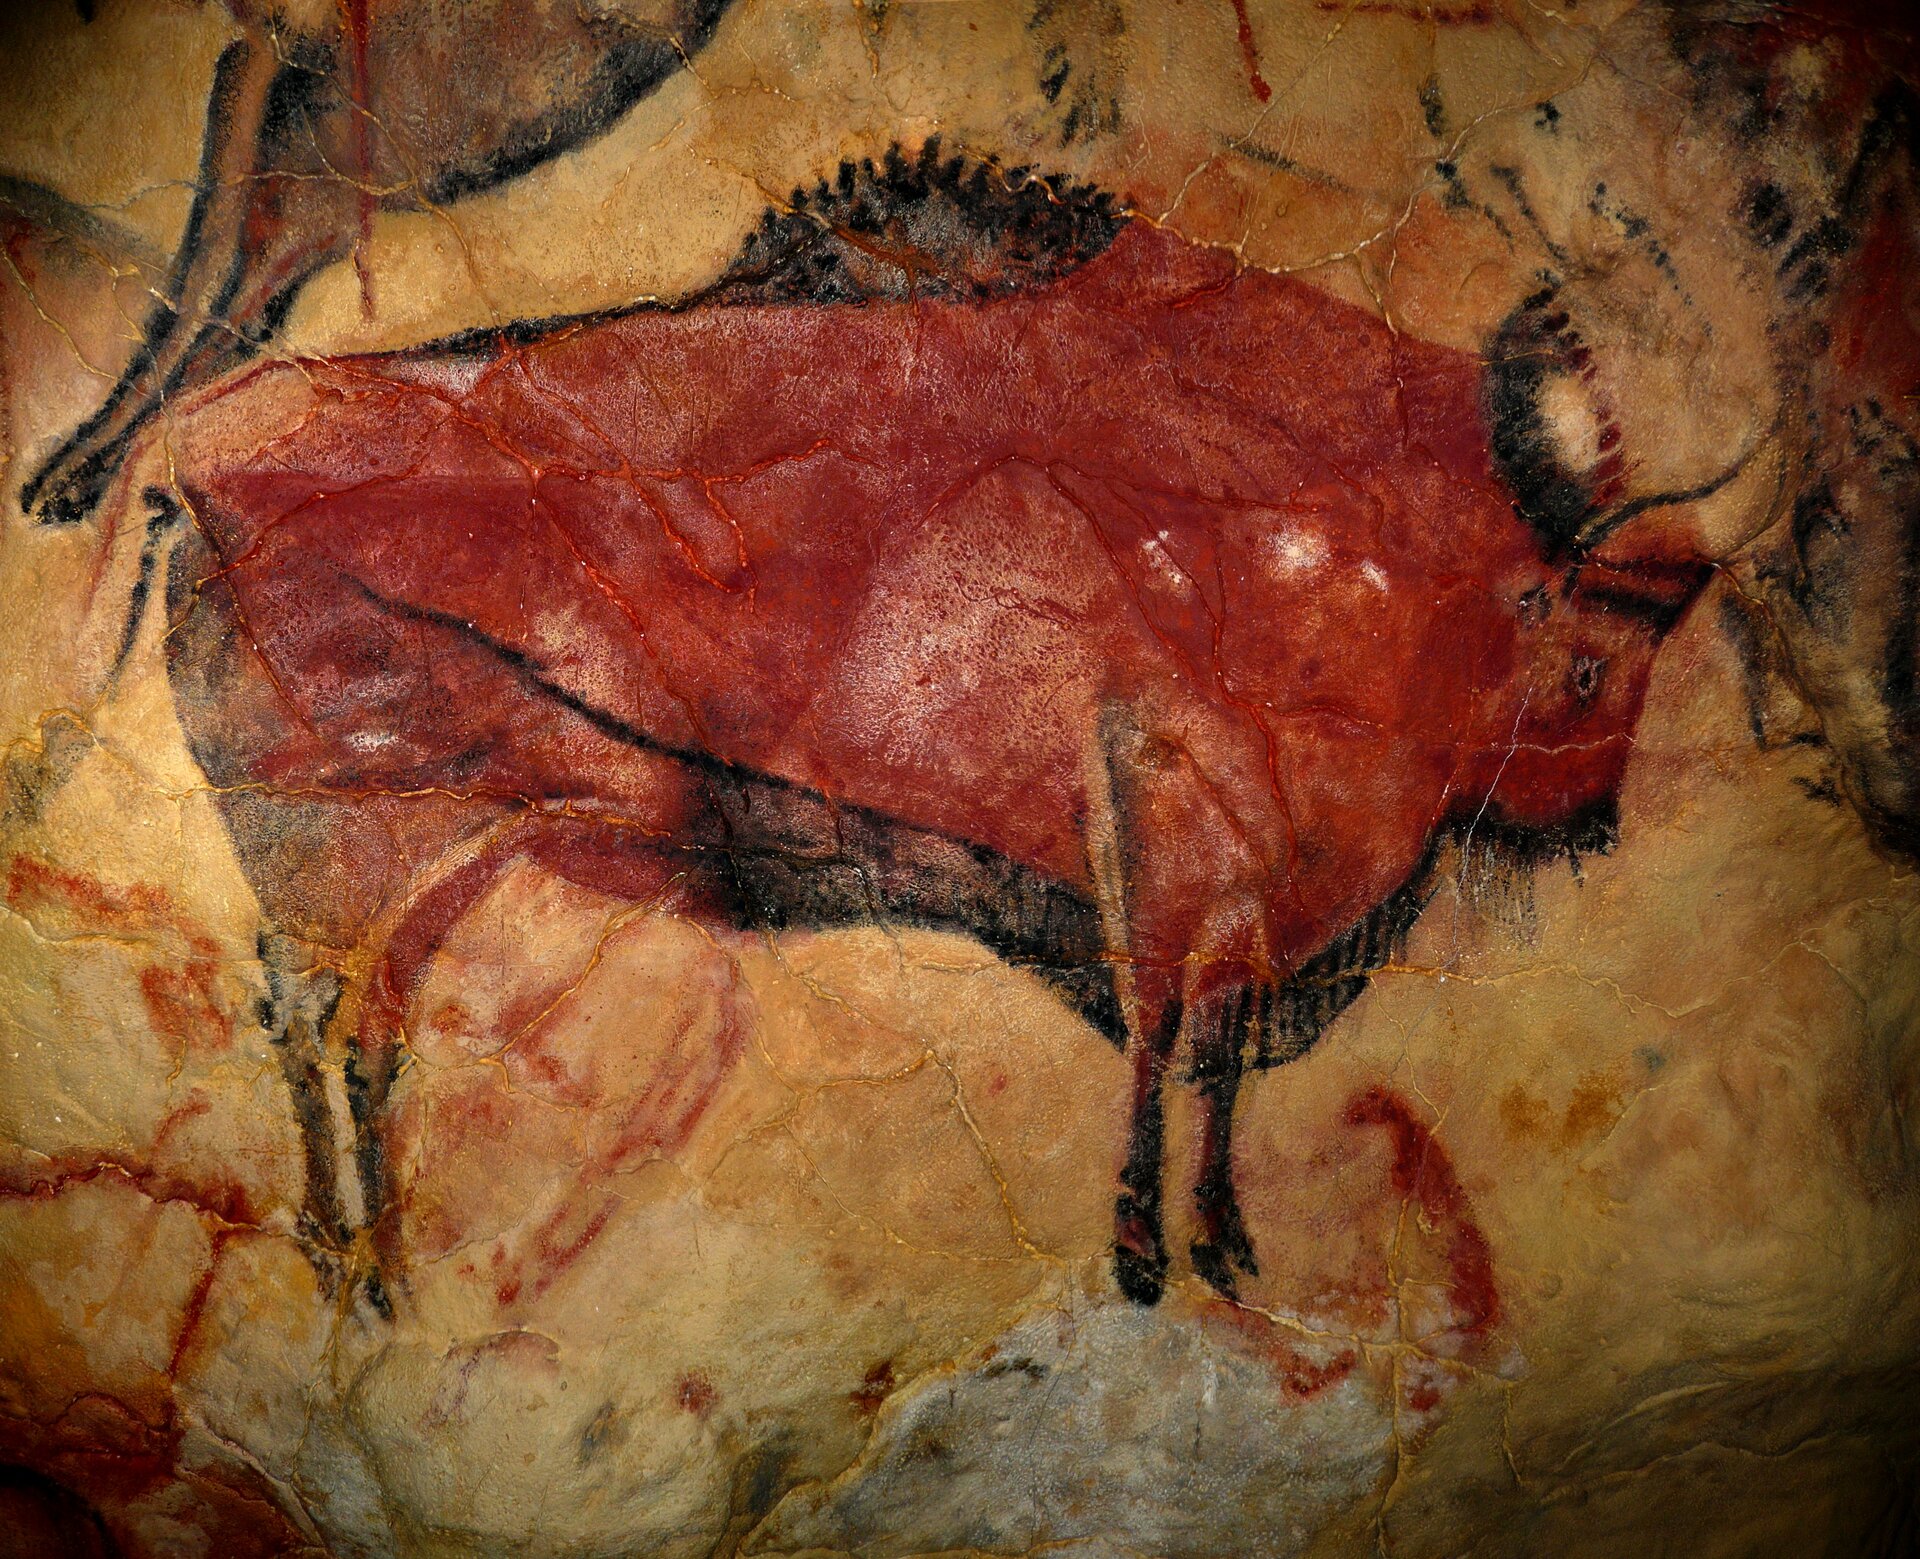 Rysunek na ścianie w jaskini przedstawiający bizona namalowany czerwoną farbą.